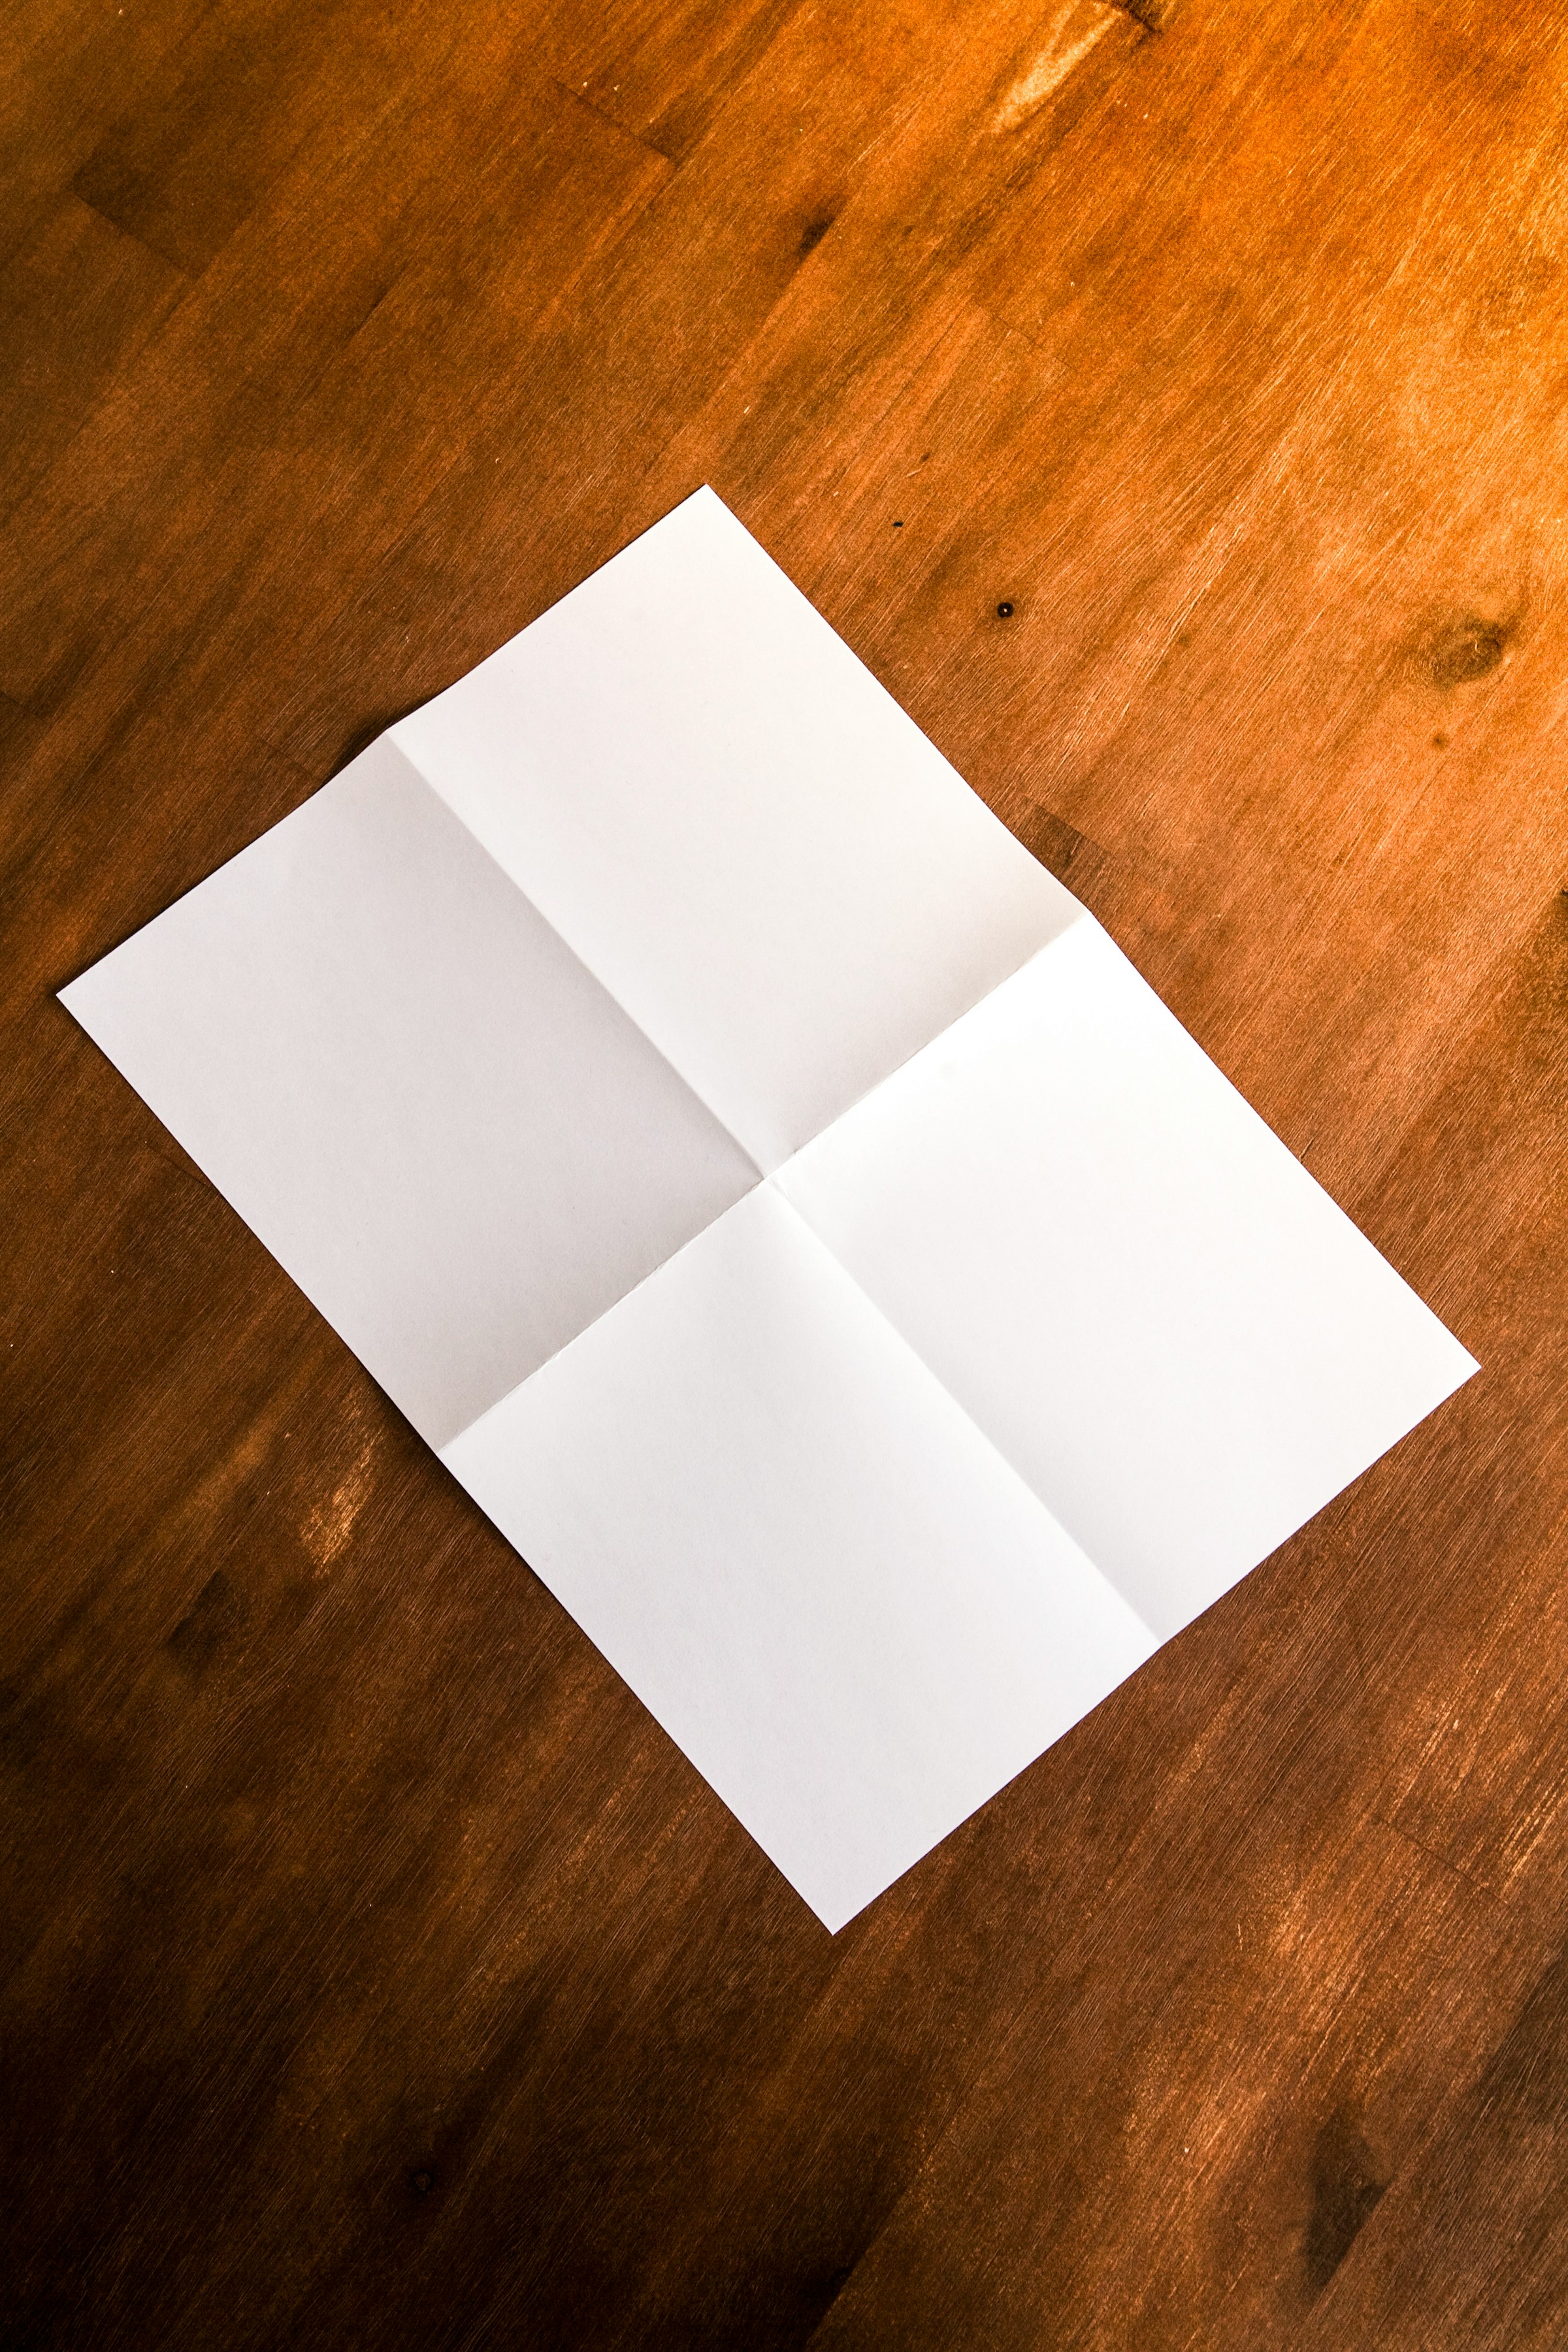 Une feuille de papier pliée sur le sol | Source : Unsplash